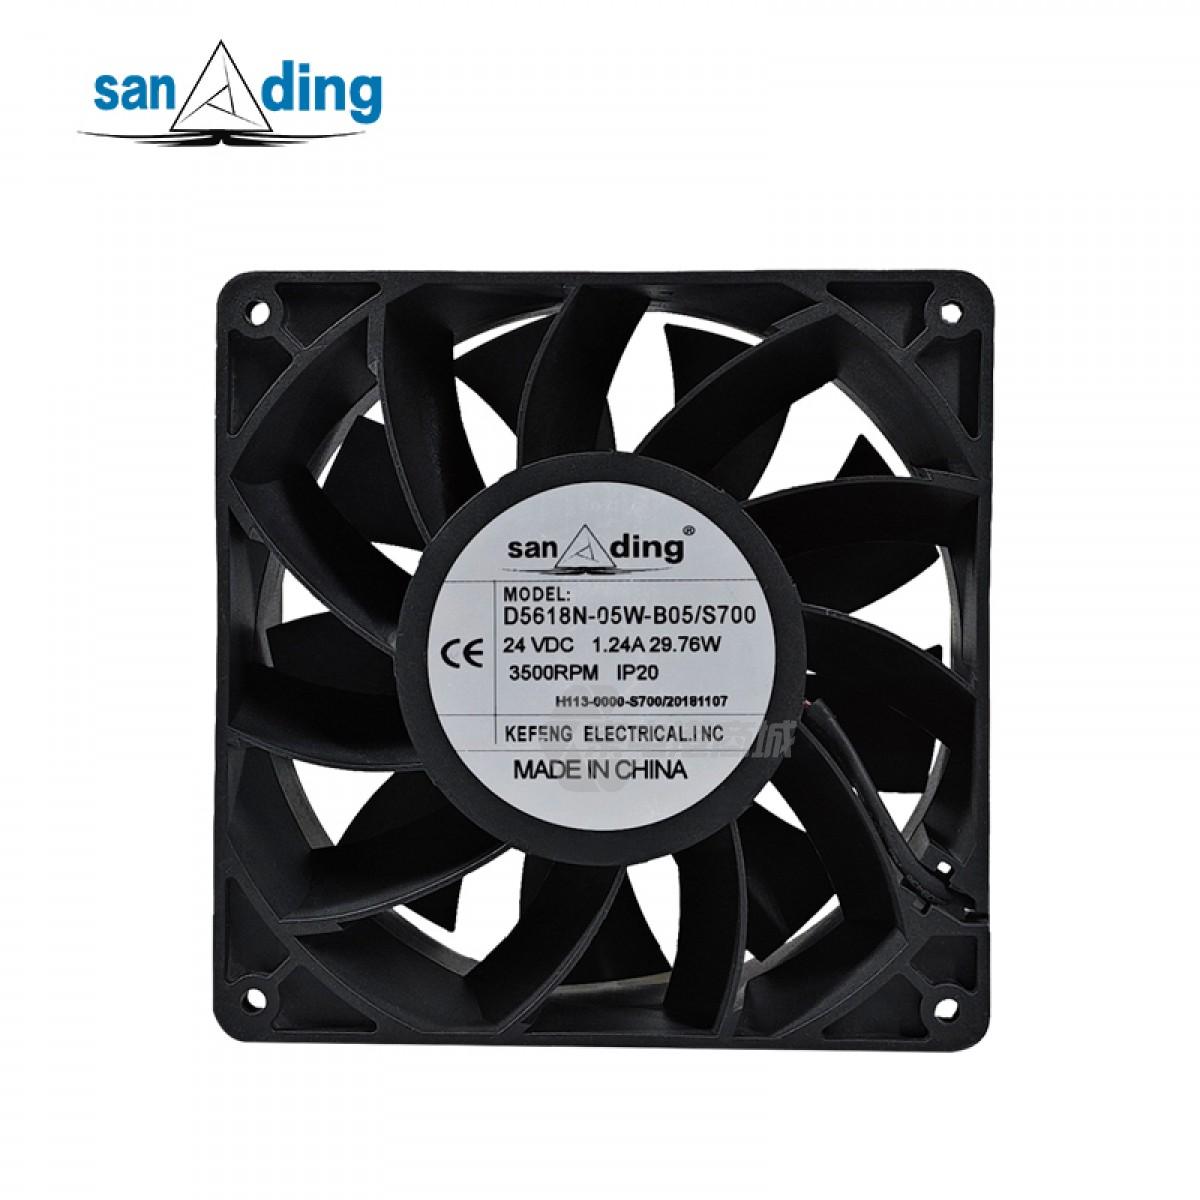 sanding D5618N-05W-B05 24VDC 0.3A 29.76W 3500rpm 330CFM 140x140x50mm 2-wire DC axial fan